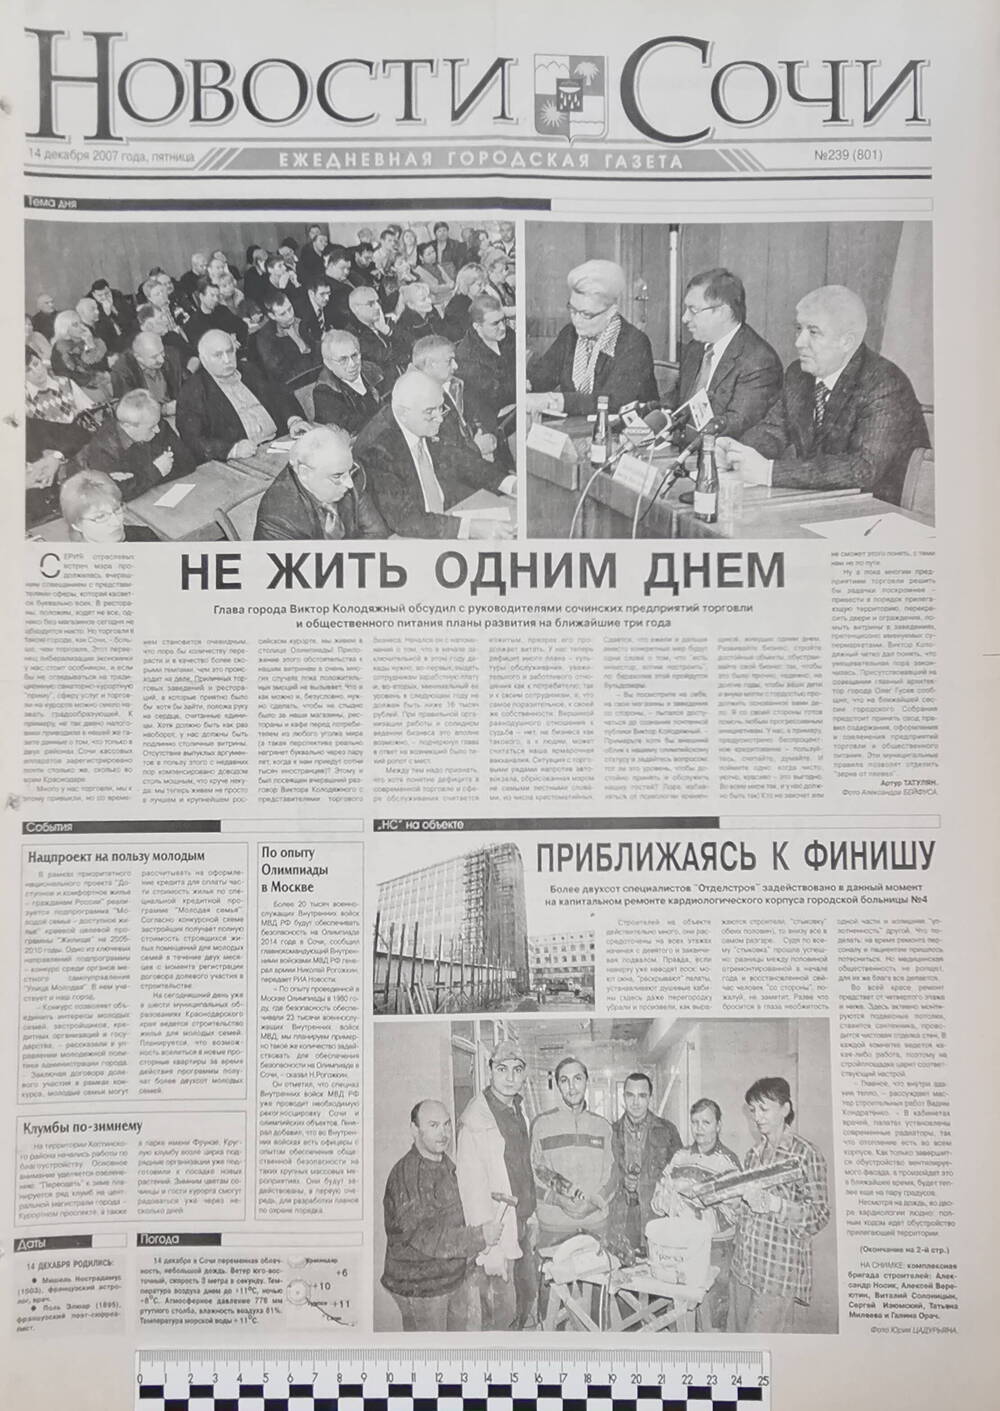 Газета ежедневная городская «Новости Сочи» № 239 (801) от 14 декабря 2007 г.